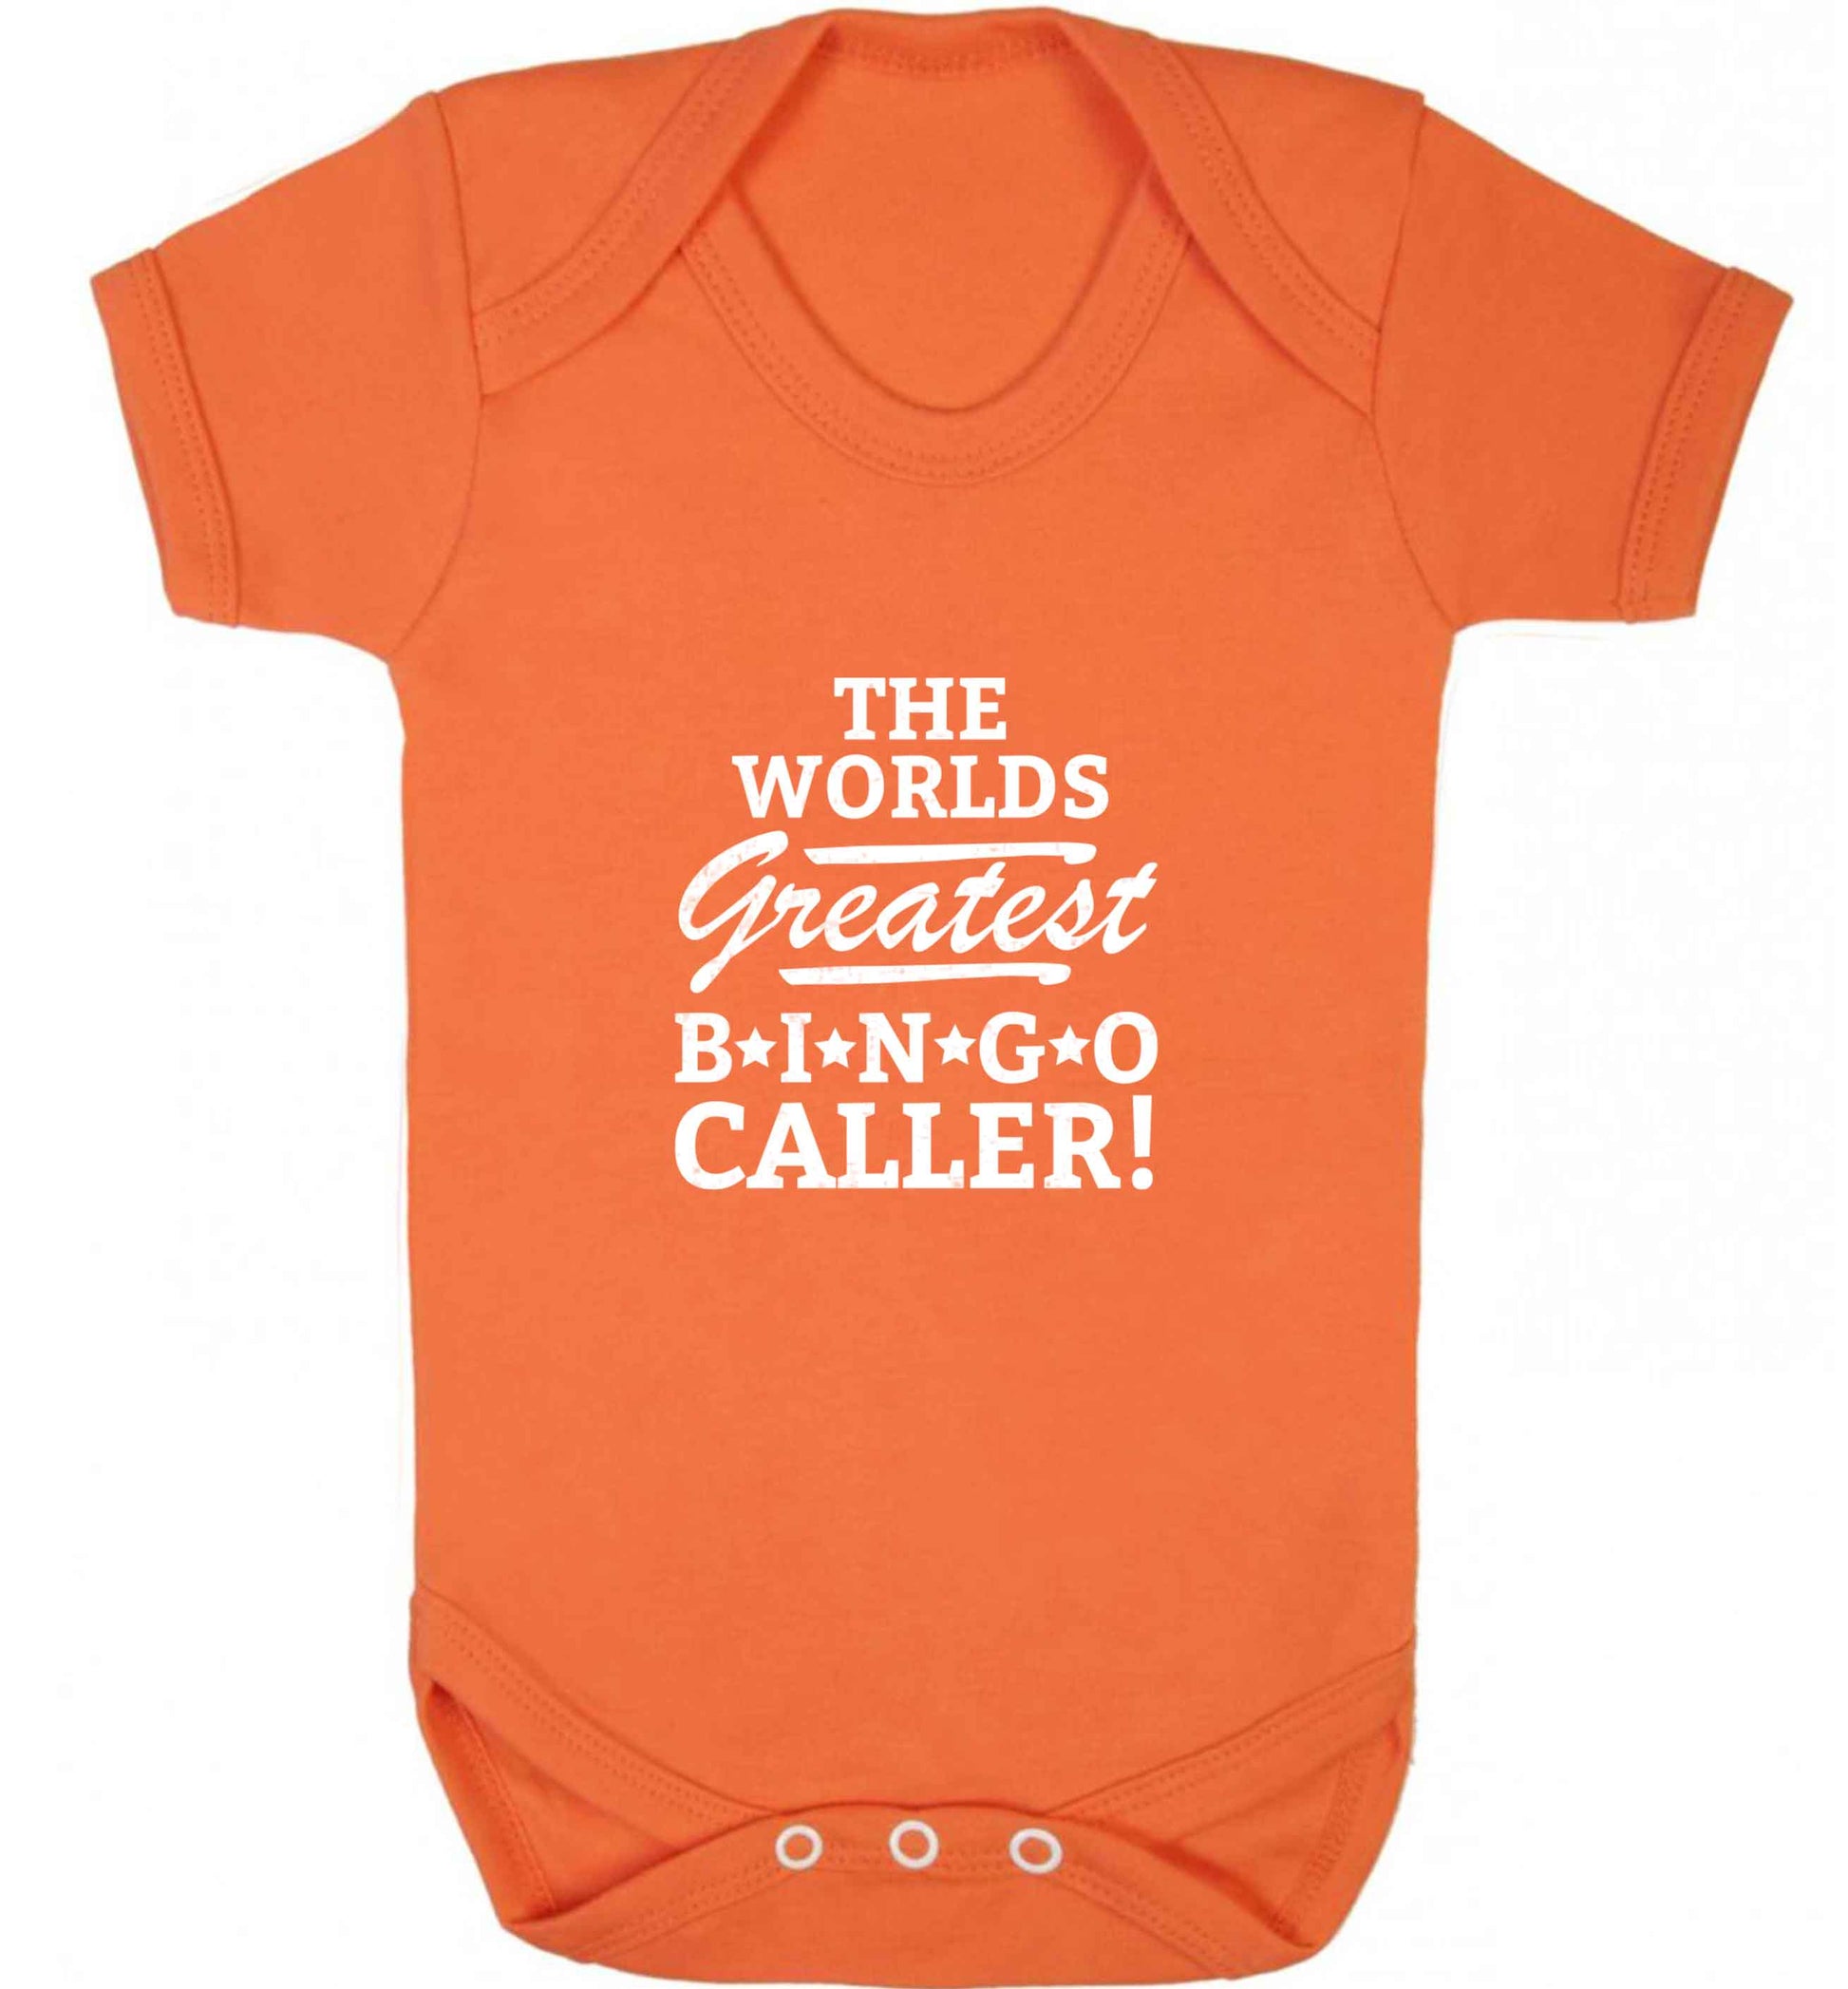 Worlds greatest bingo caller baby vest orange 18-24 months